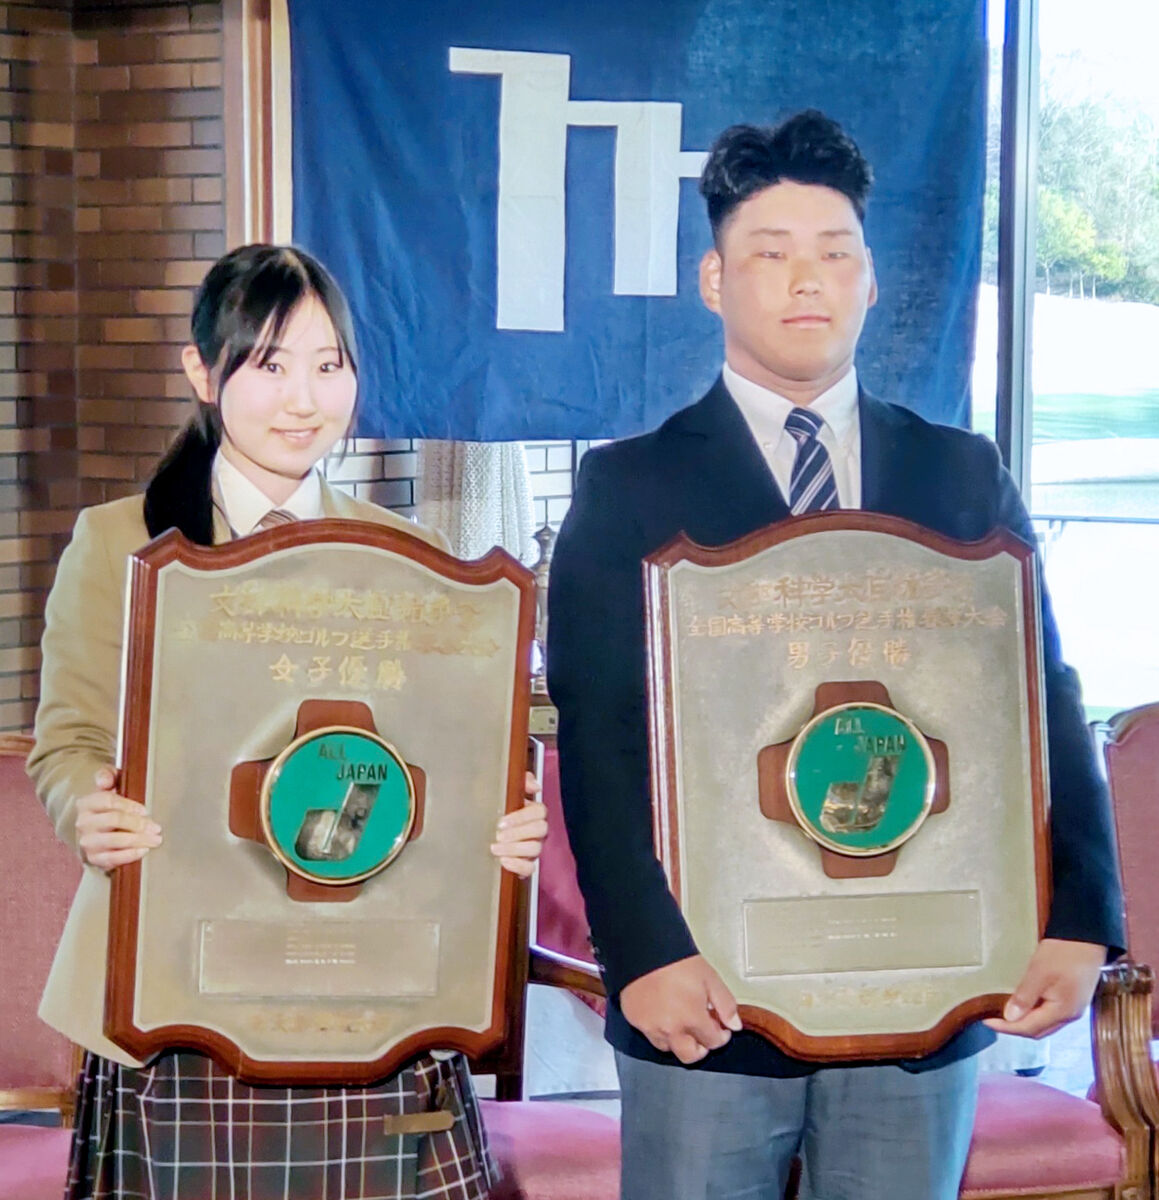 高校の部で優勝し、文部科学大臣楯を手にする外岩戸晟士（右）と左奈々